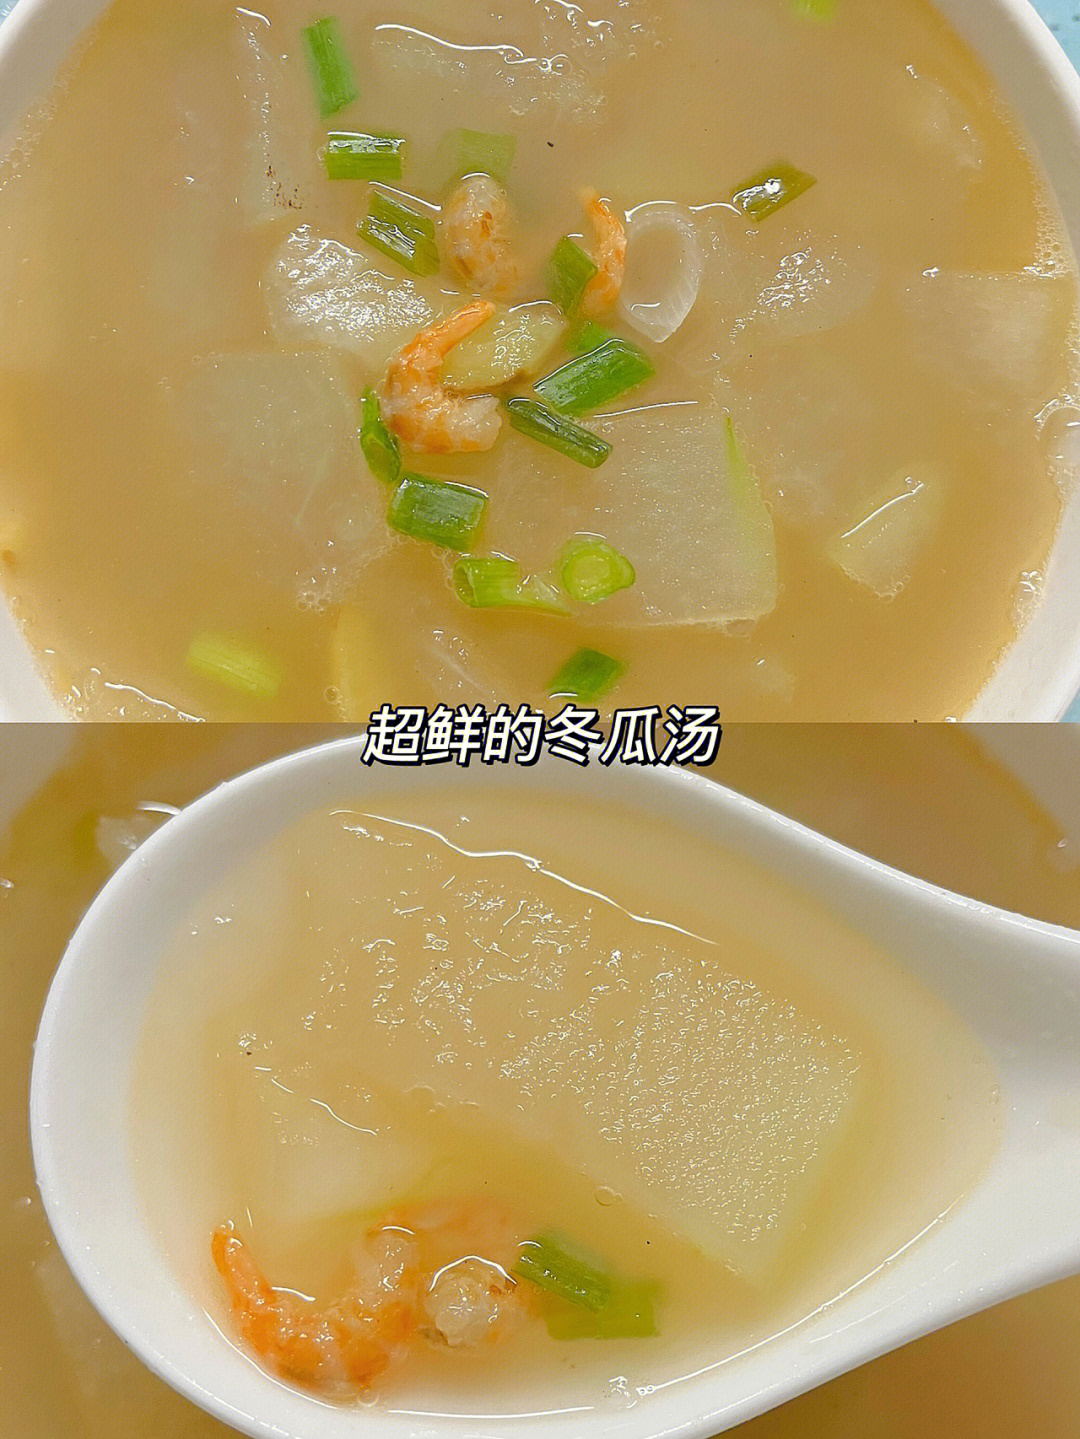 冬瓜排骨虾米汤图片